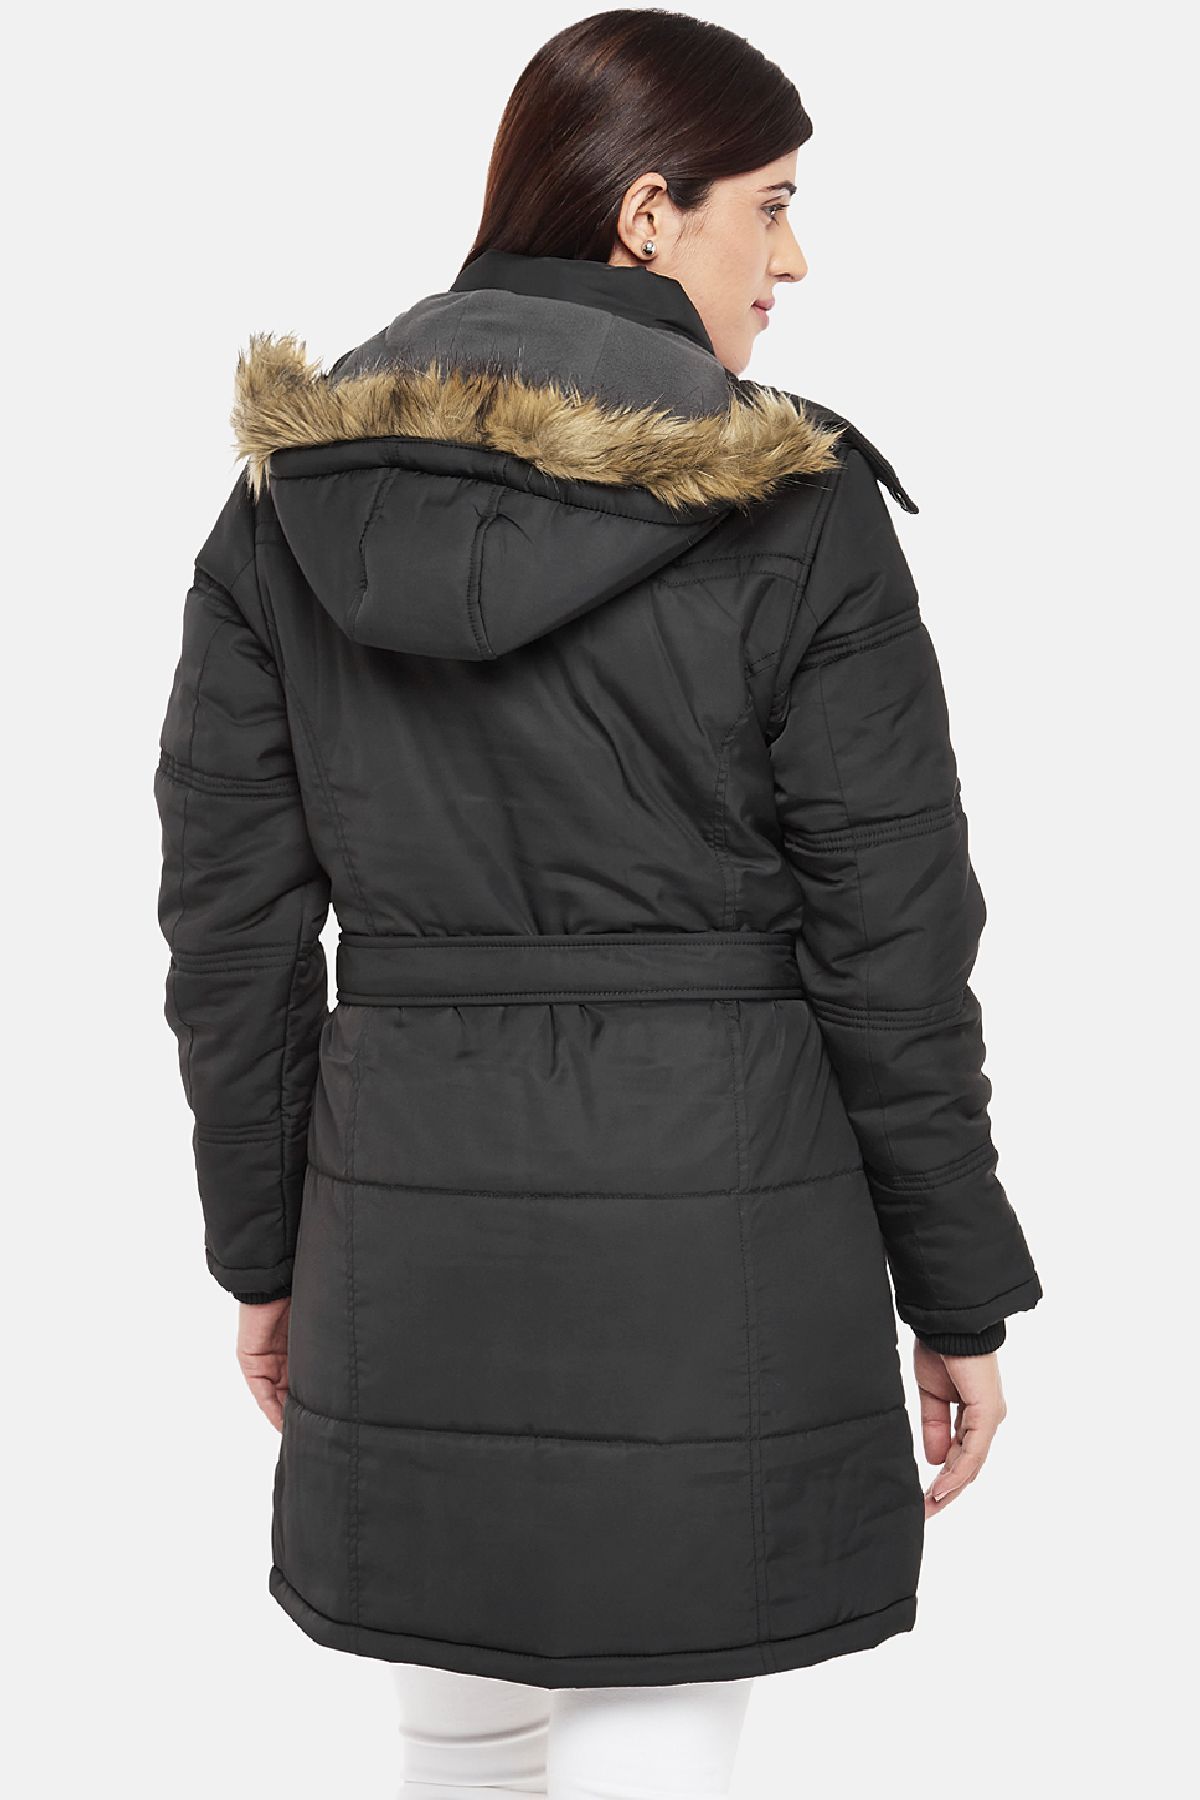 Black Fleece Lined Hooded Parka Jacket | Women